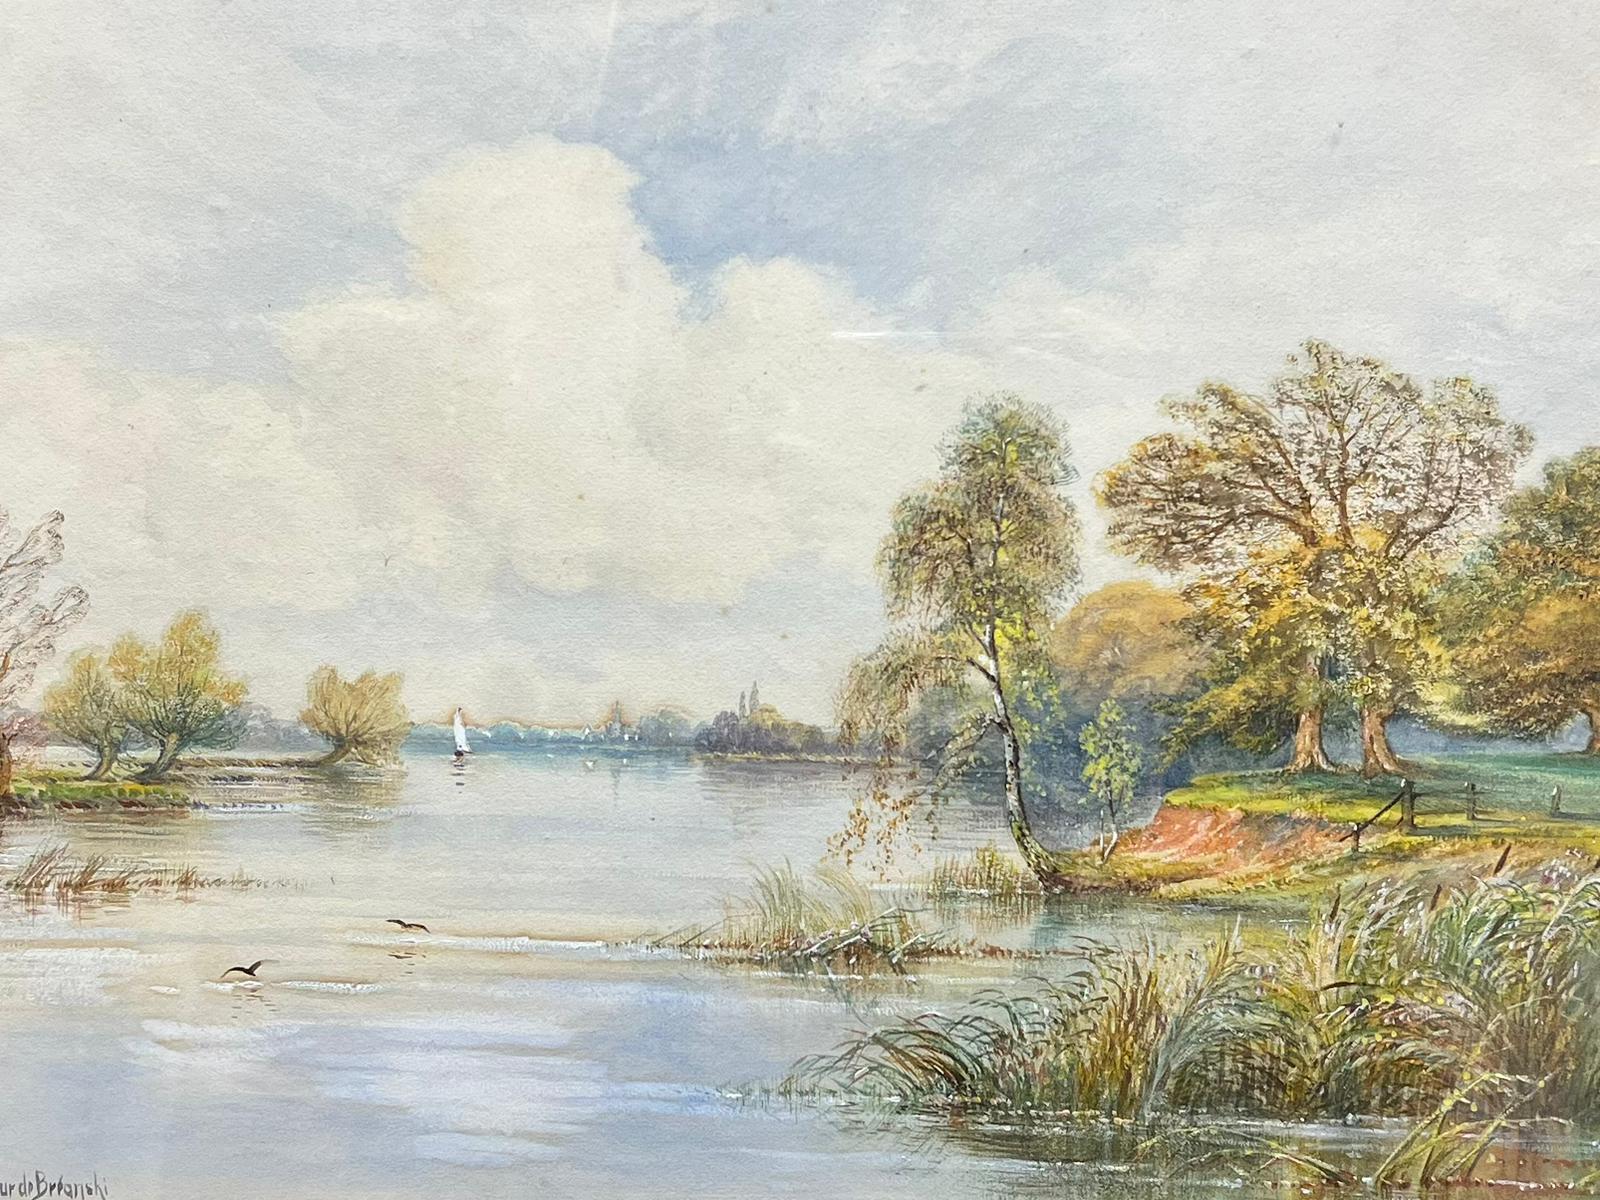 Une journée ensoleillée sur le paysage de la Tamise, peinture britannique ancienne